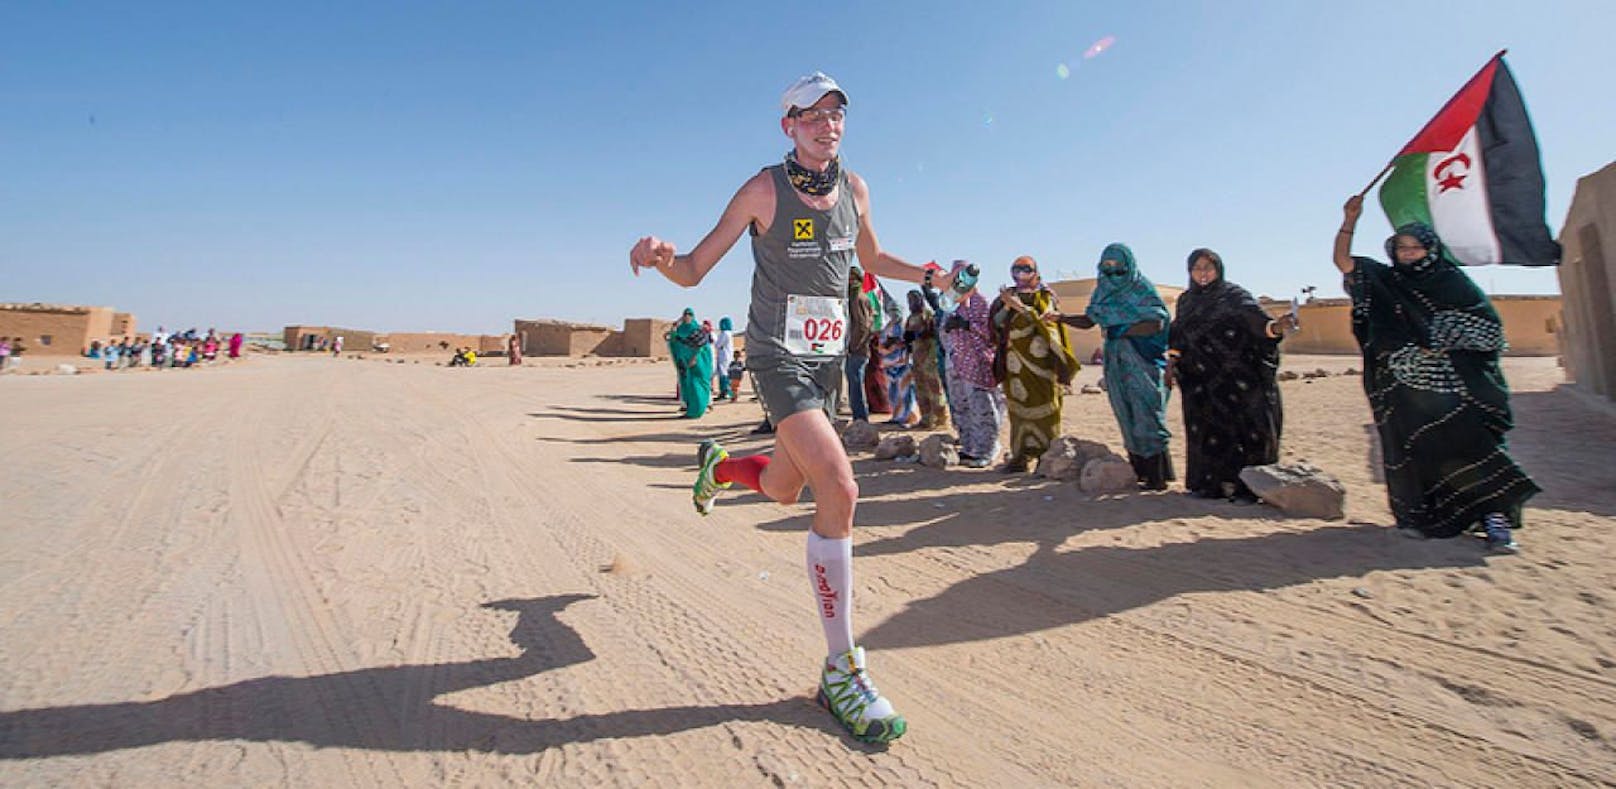 2014 konnte Rainer überraschend den Saharamarathon in 2 Stunden und 50 Minuten gewinnen. 